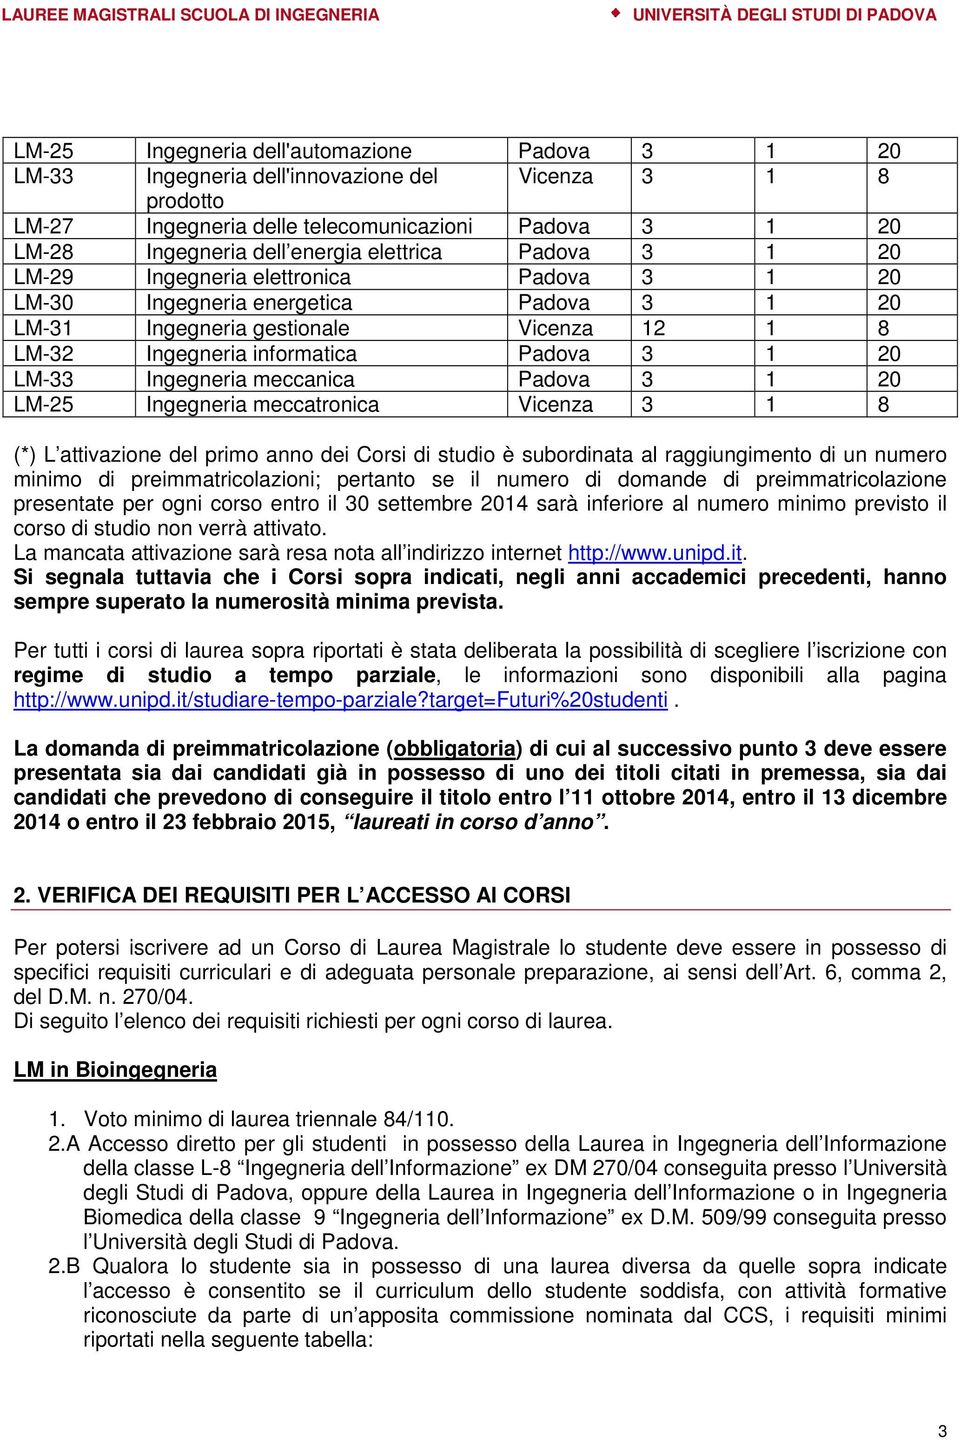 LM-33 Ingegneria meccanica Padova 3 1 20 LM-25 Ingegneria meccatronica Vicenza 3 1 8 (*) L attivazione del primo anno dei Corsi di studio è subordinata al raggiungimento di un numero minimo di